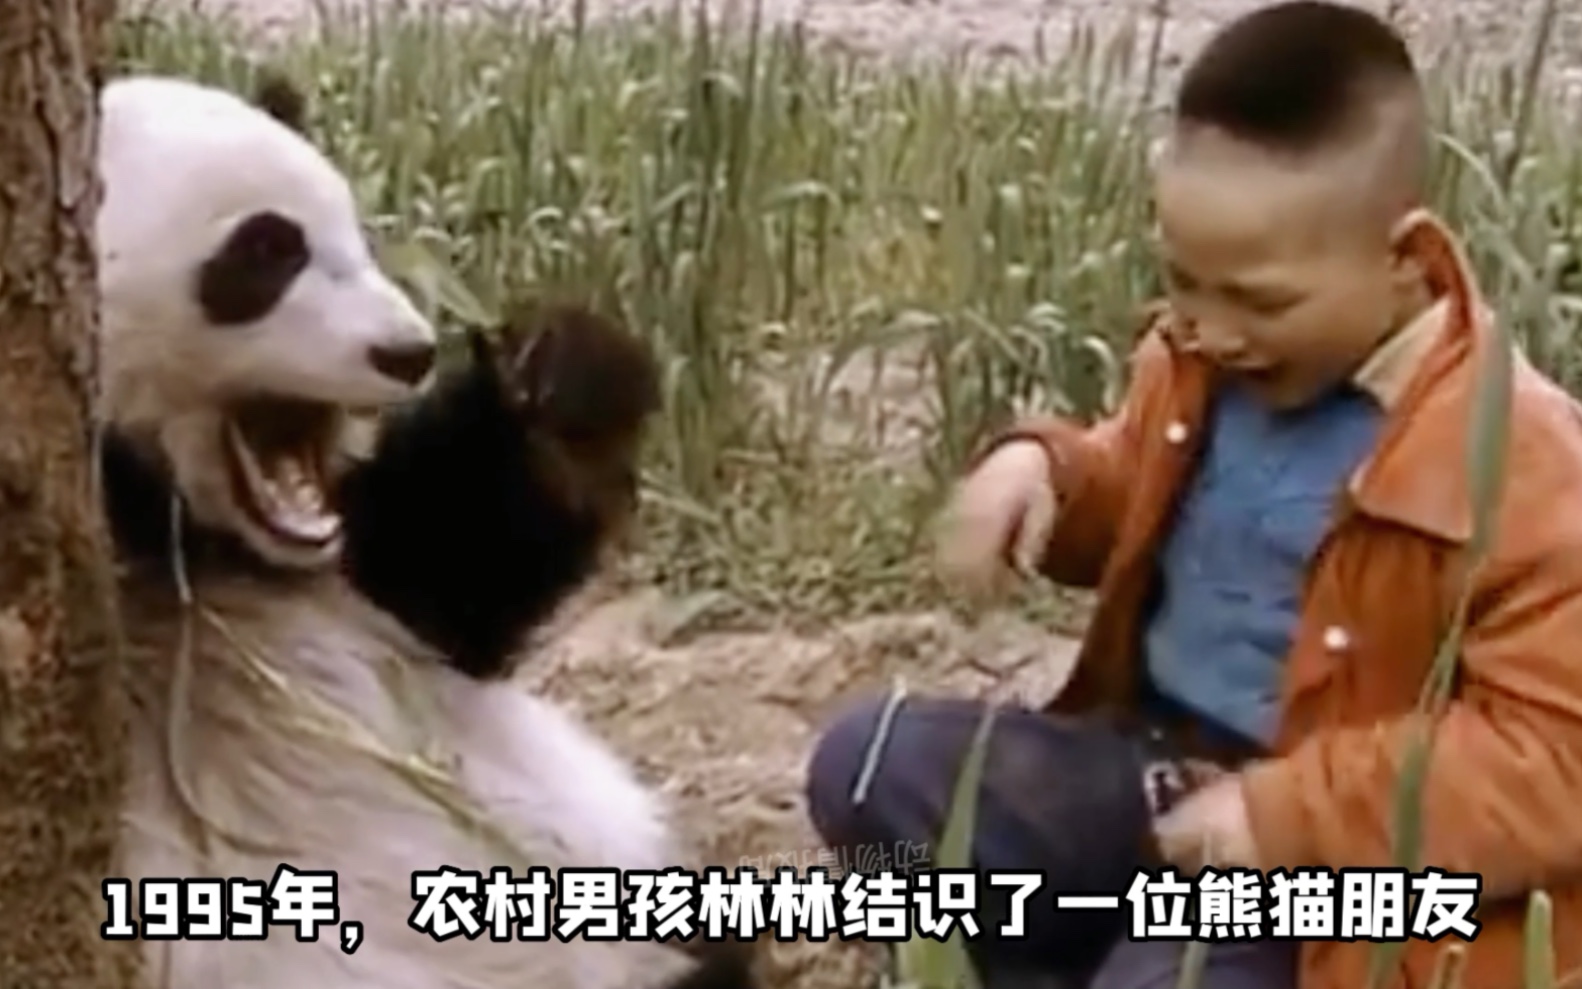 1995年，一个山村男孩和野生大熊猫成为好朋友，巡山时发现自己的熊猫朋友受伤，一路小跑回去叫人，在救护人员赶到后及时得到了治疗，最后放归山林